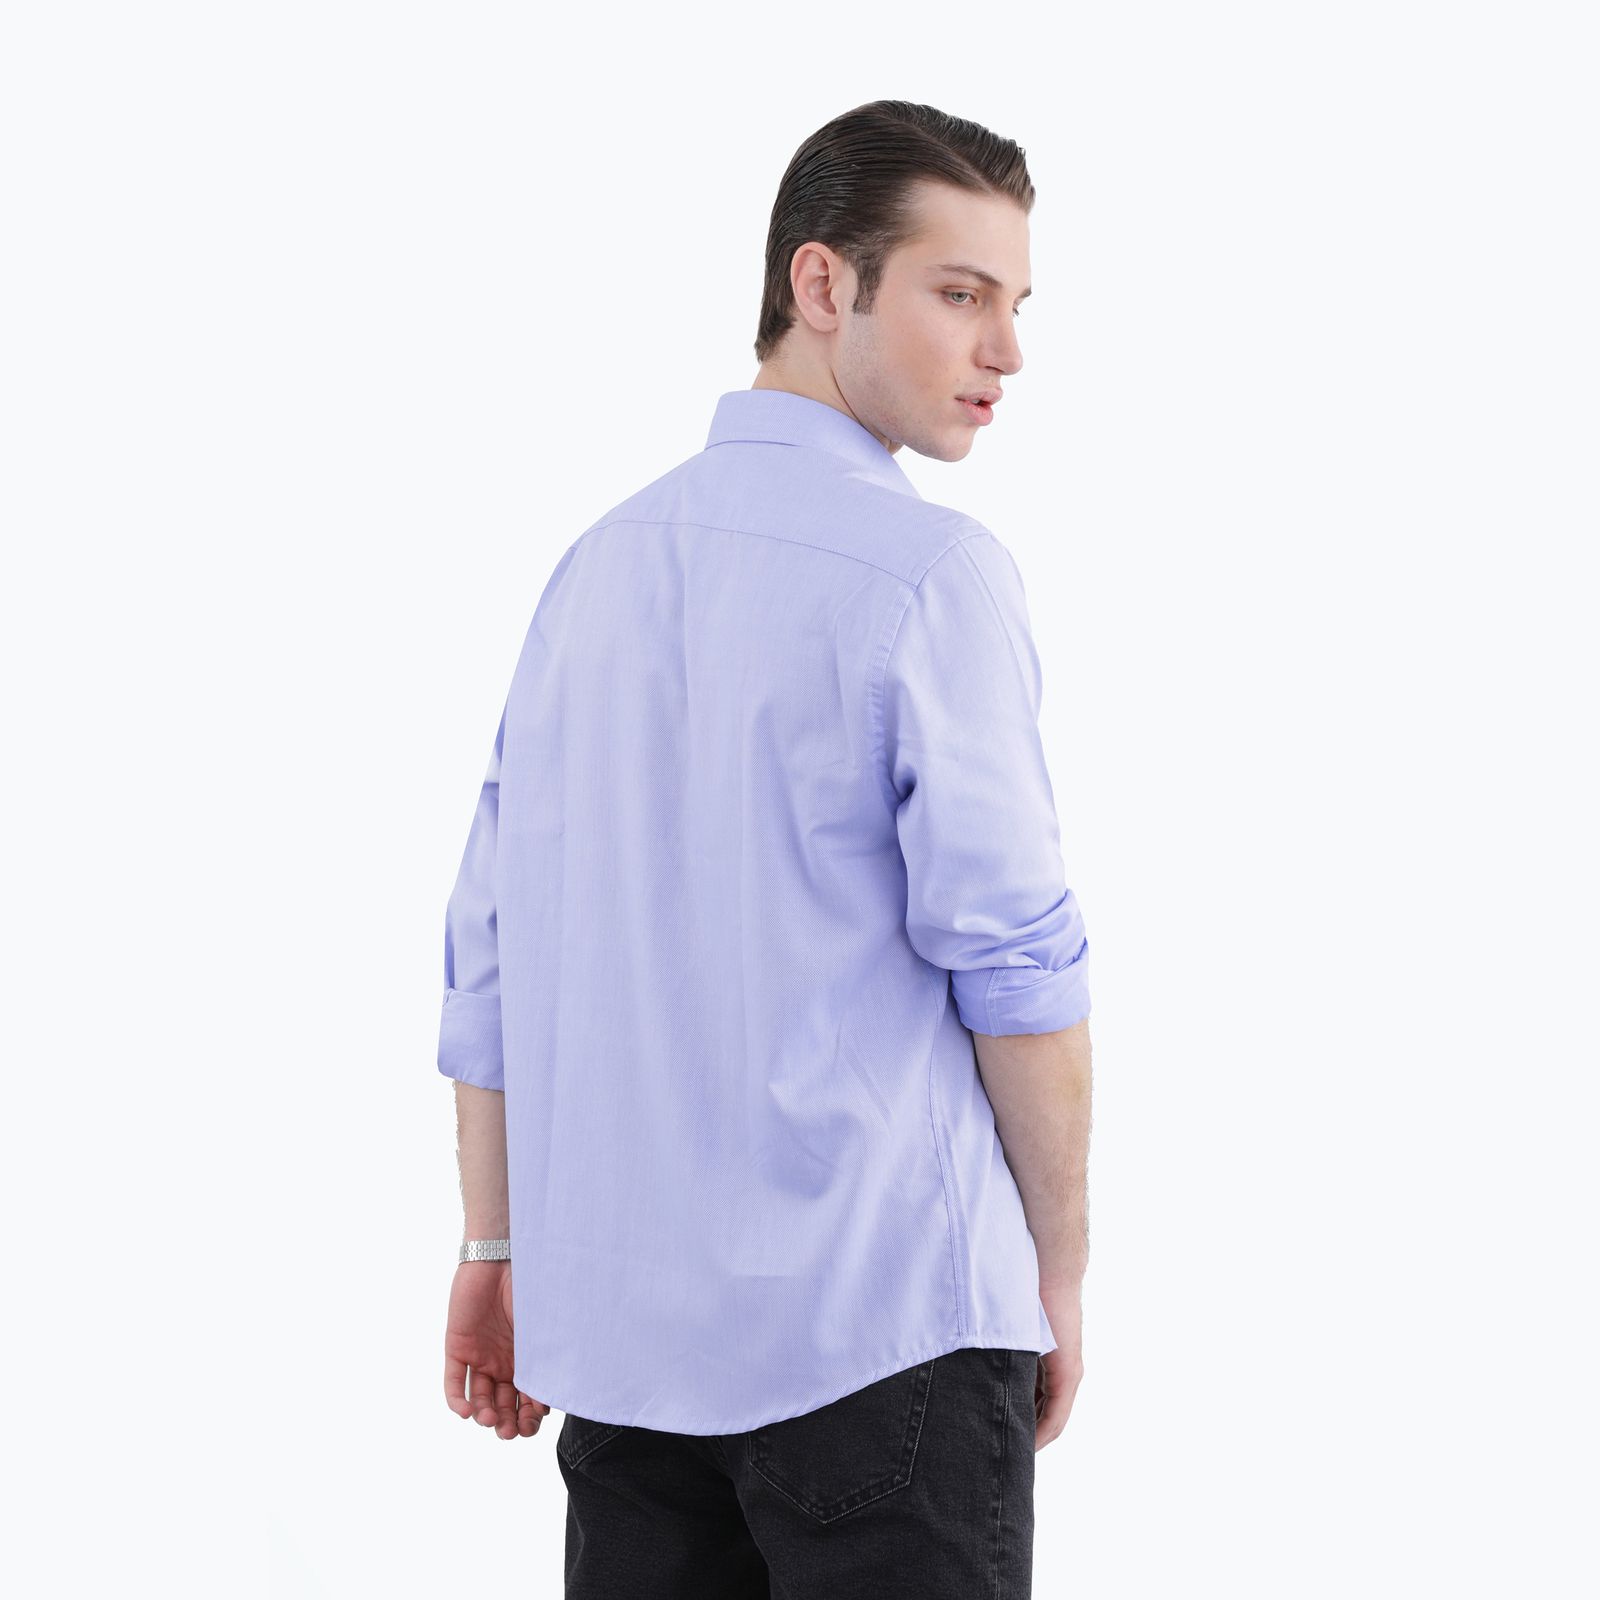 پیراهن آستین بلند مردانه پاتن جامه مدل 102821020310301 -  - 4